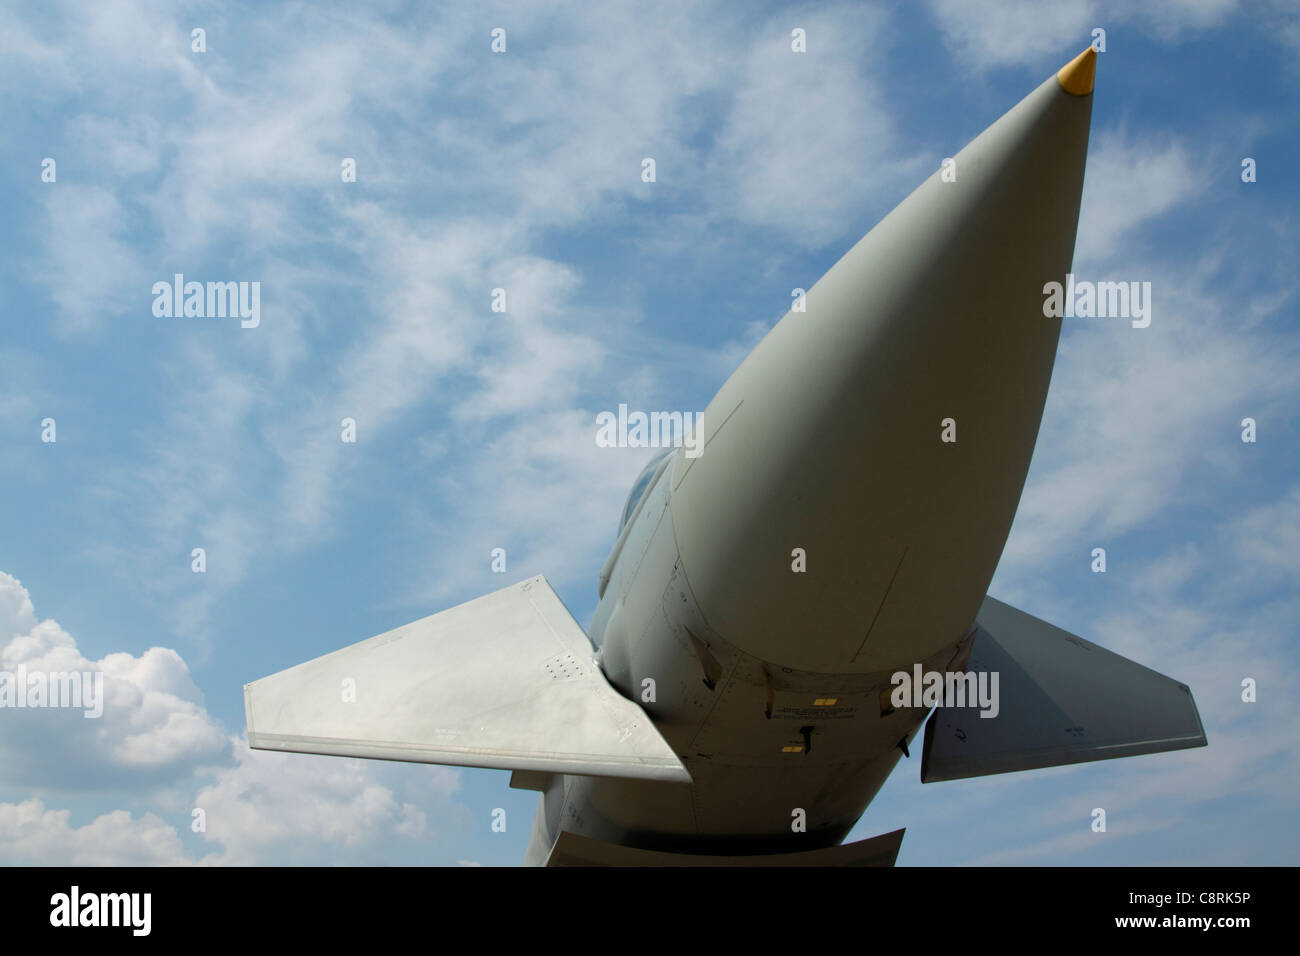 Nariz y canards de un avión de combate Eurofighter Typhoon contra el cielo azul Foto de stock